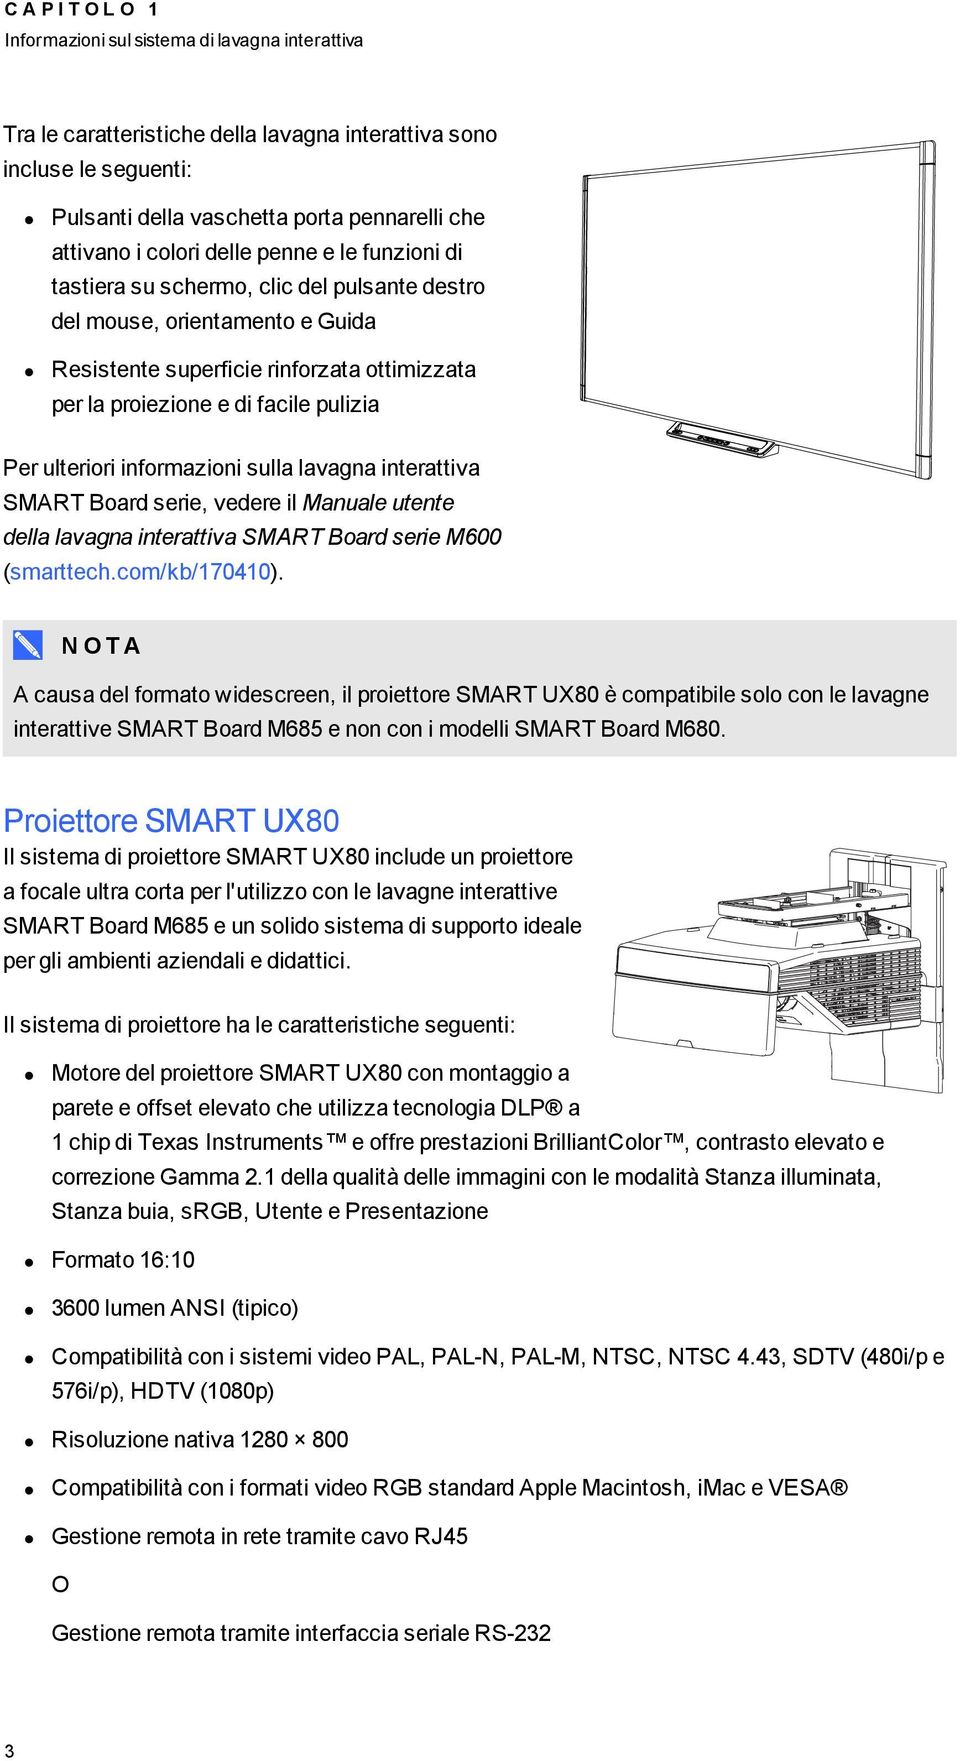 Per ulteriori informazioni sulla lavagna interattiva SMART Board serie, vedere il Manuale utente della lavagna interattiva SMART Board serie M600 (smarttech.com/kb/170410).